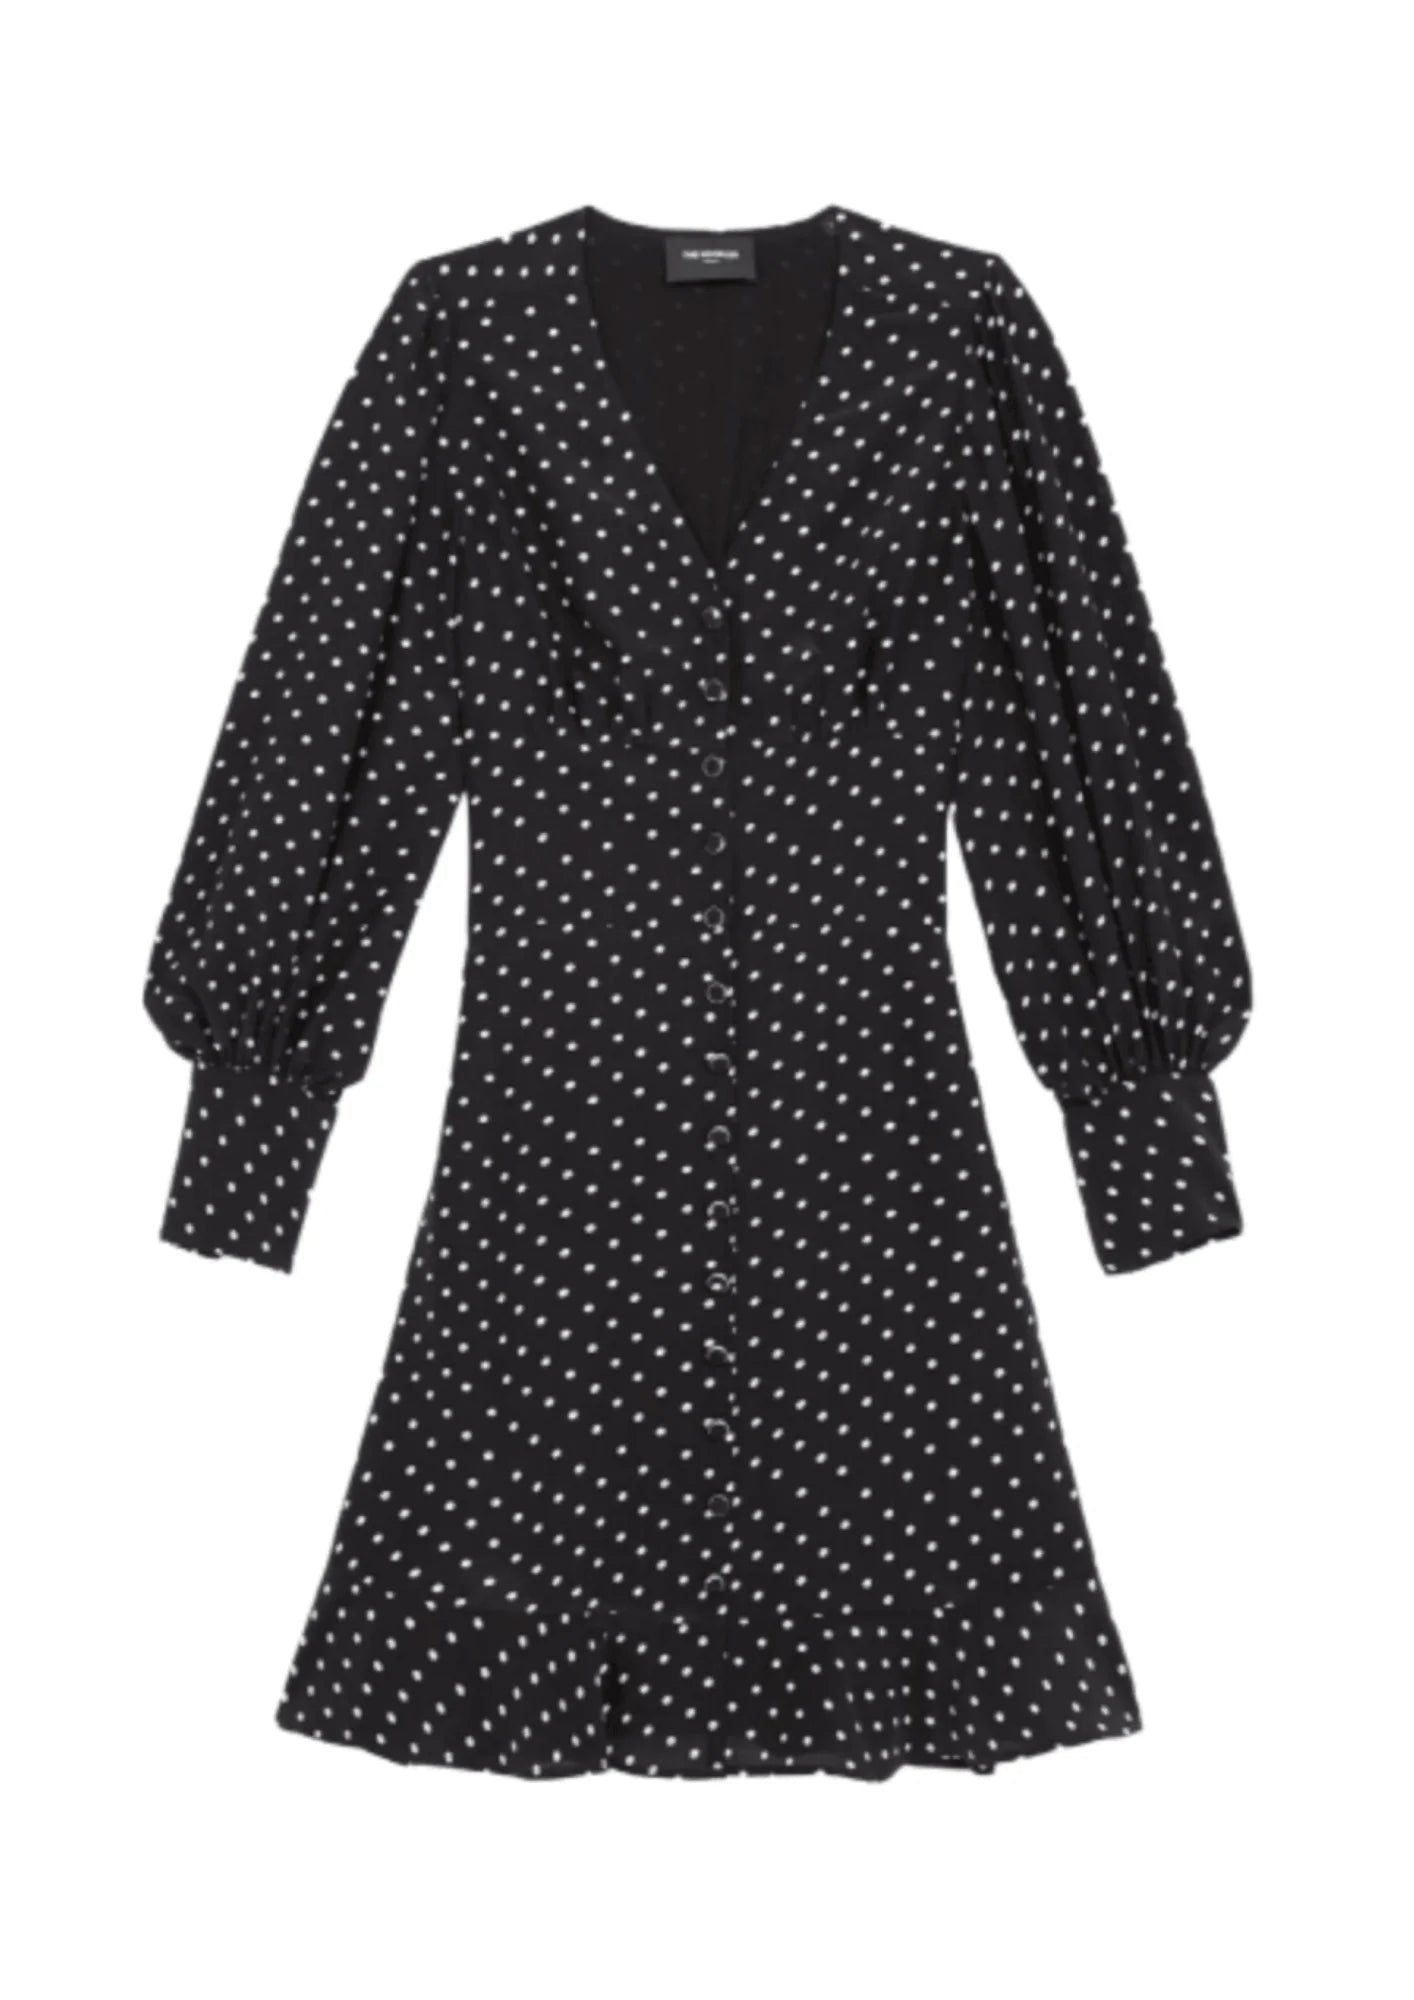 Schwarzes Kleid mit Polka -Punkten